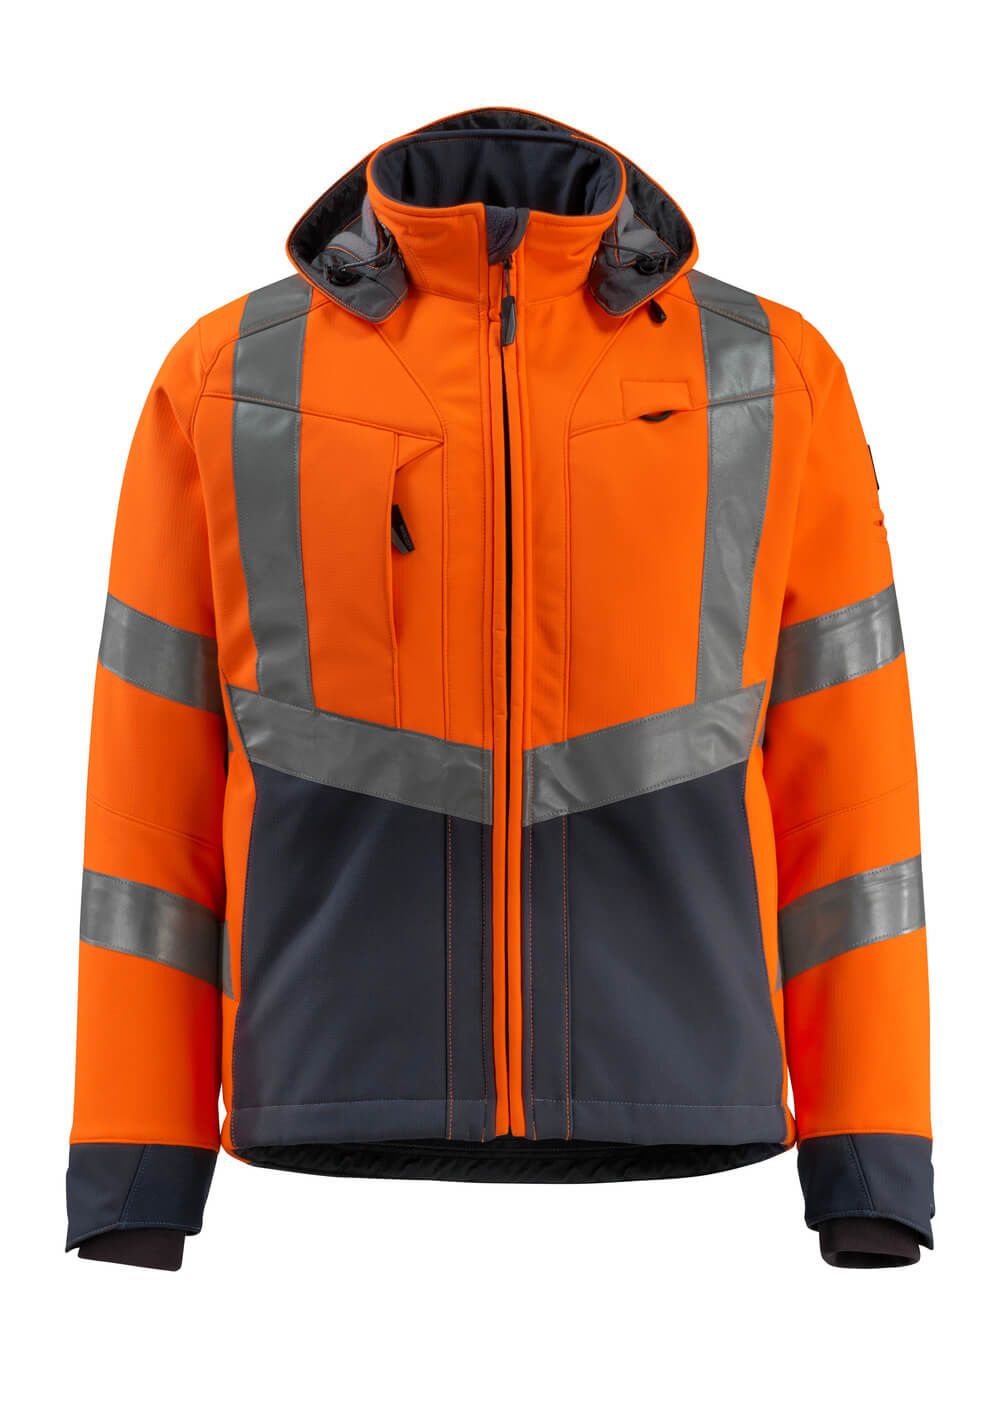 Mascot Workwear BLACKPOOL Orange/Navy Unisex Hi Vis Softshell Jacket, M